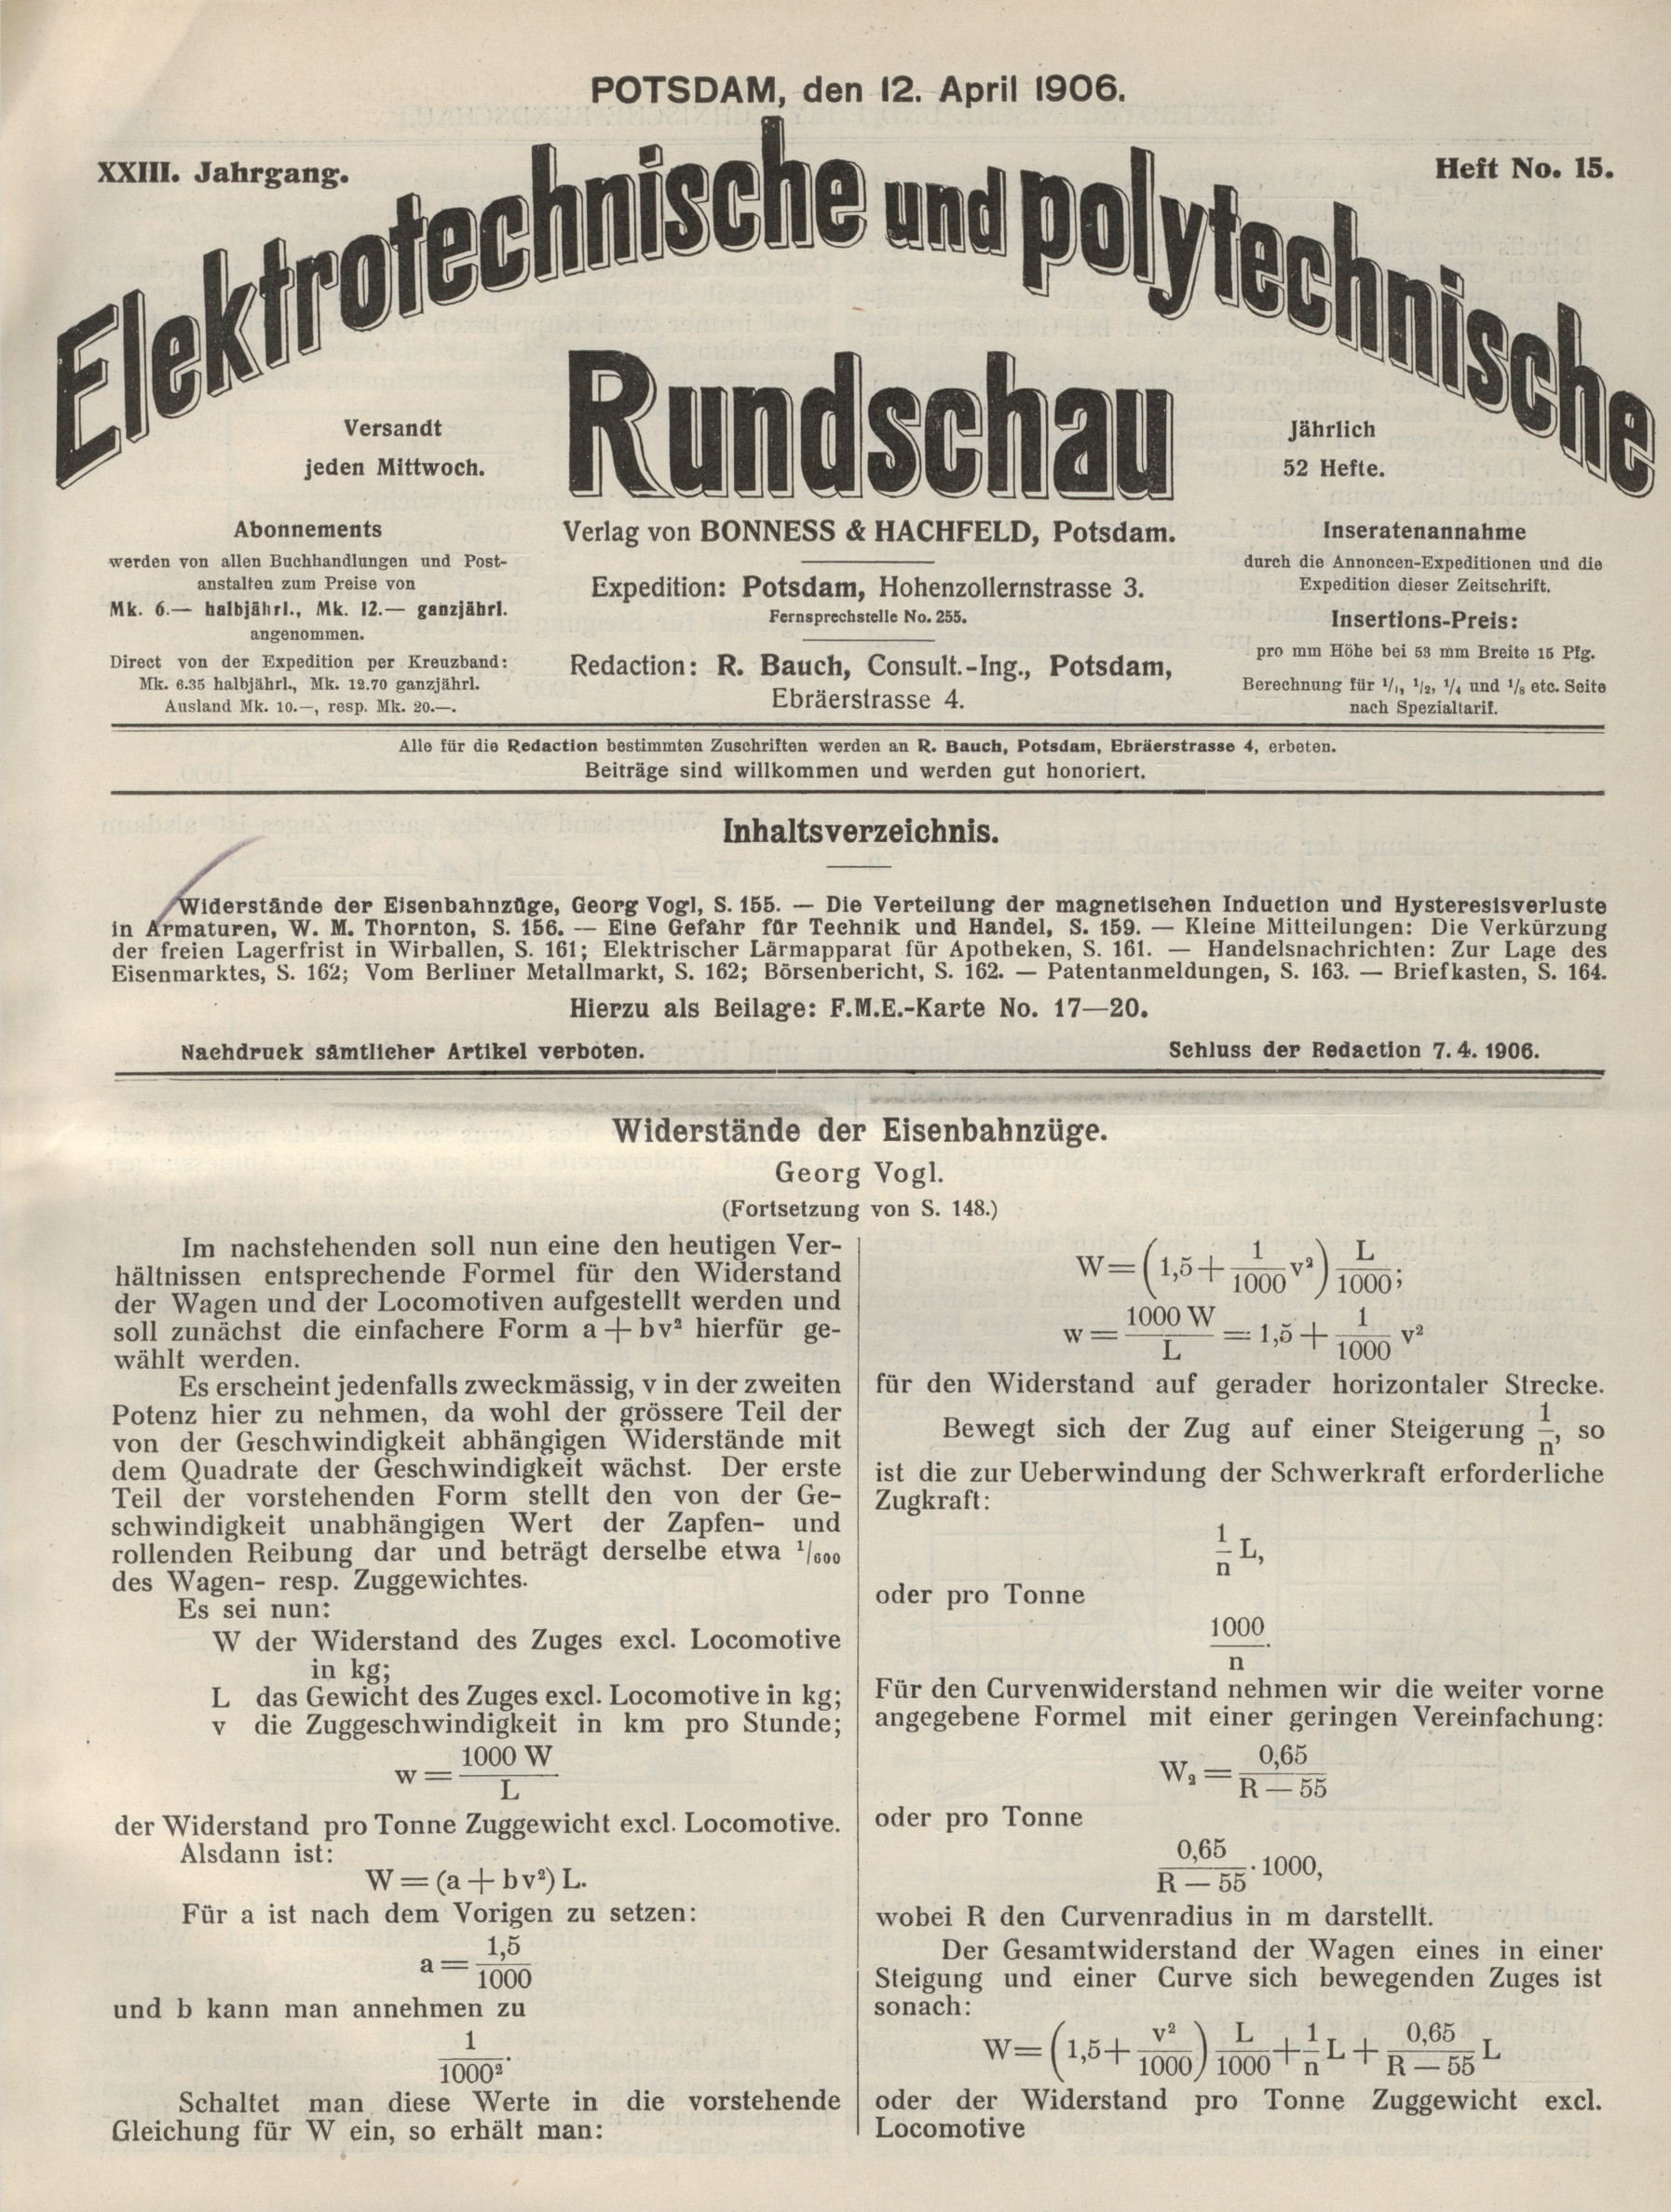 Elektrotechnische und polytechnische Rundschau, XXIII. Jahrgang, Heft No. 15